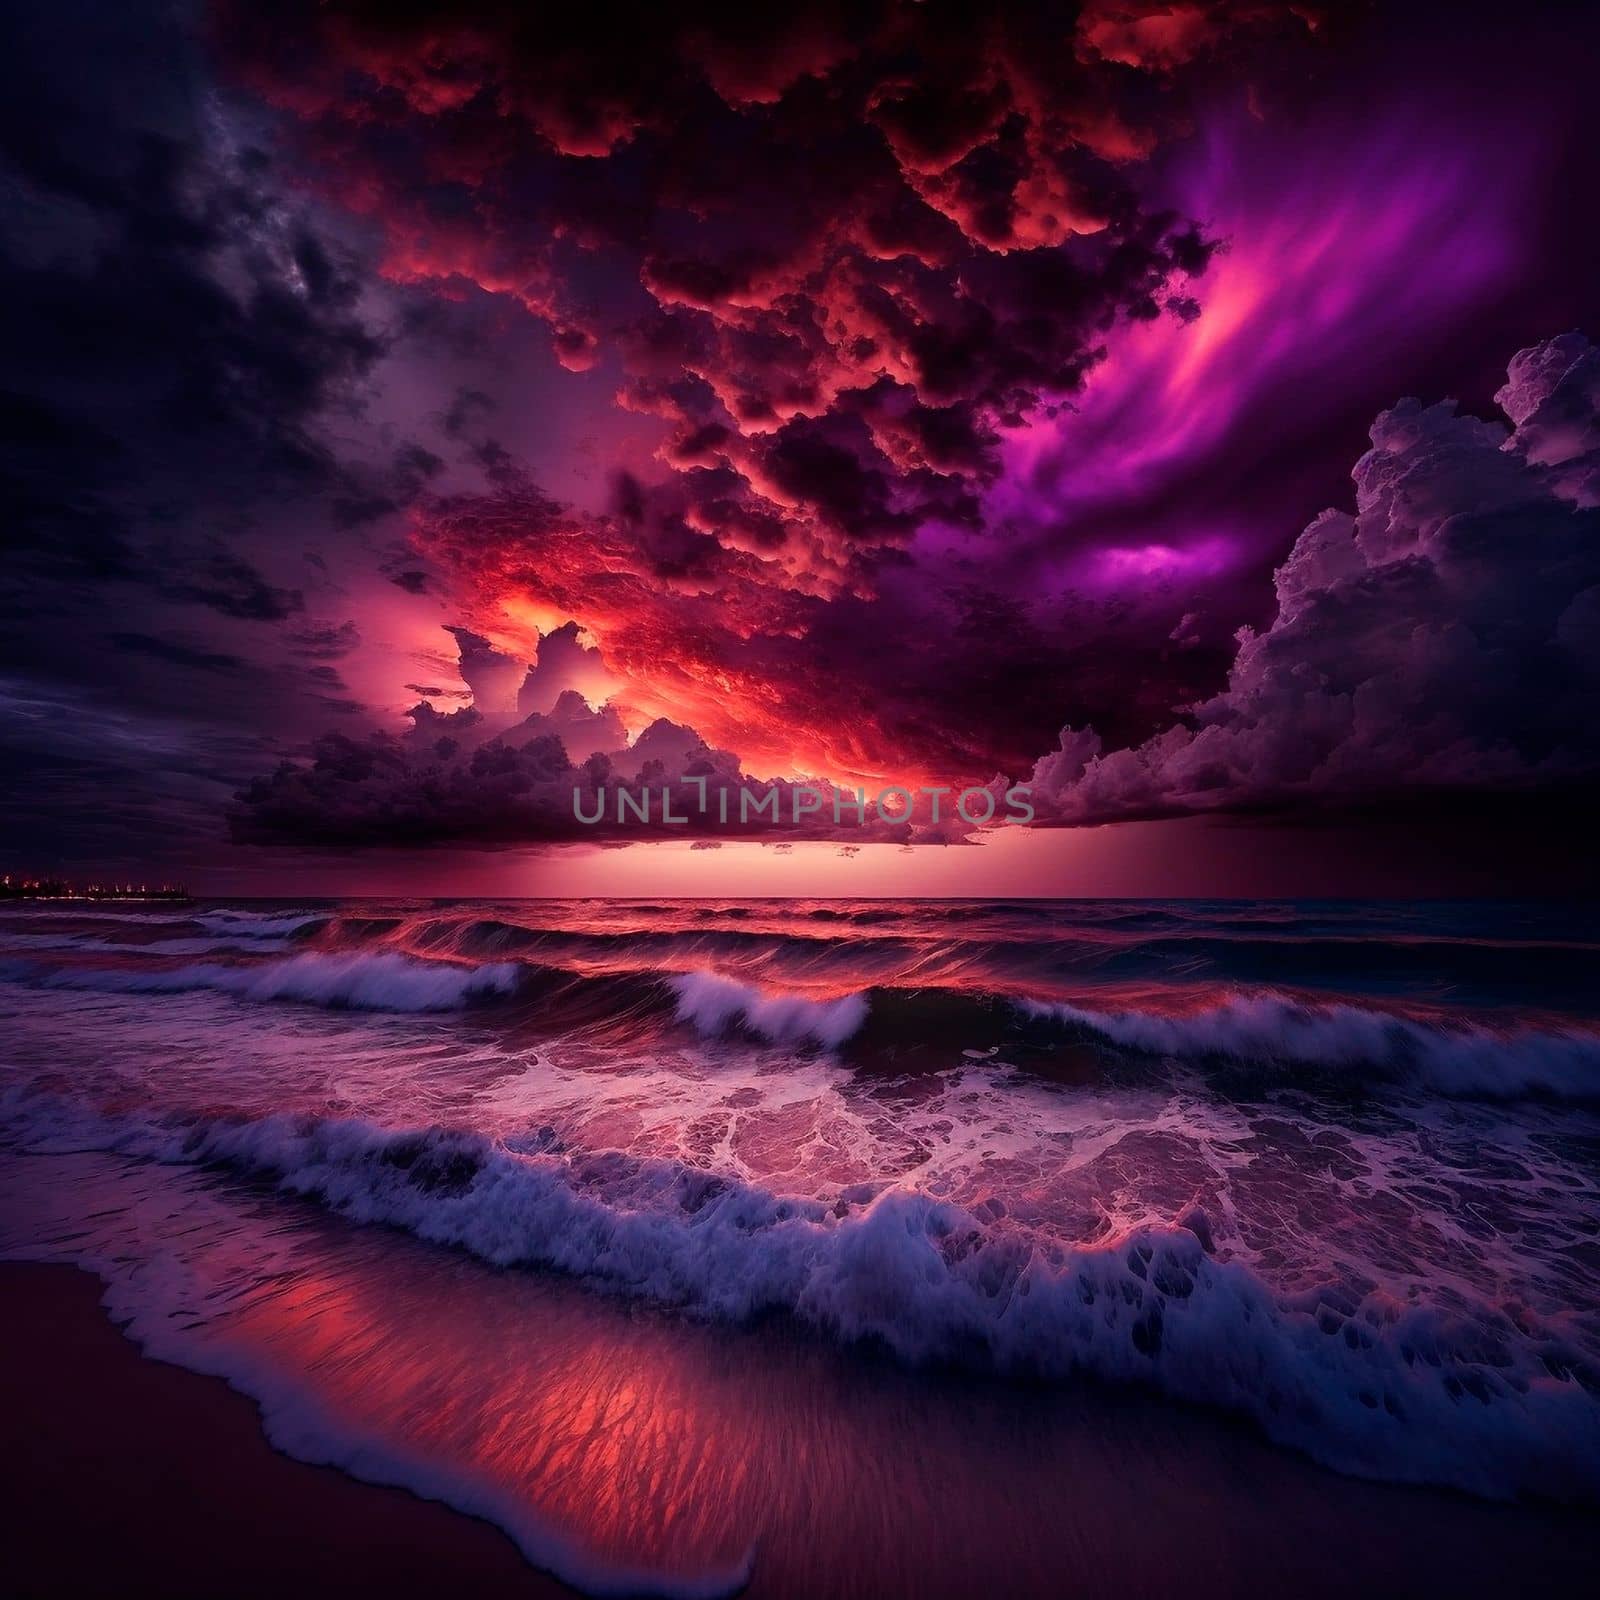 gloomy purple sunset on the beach by NeuroSky